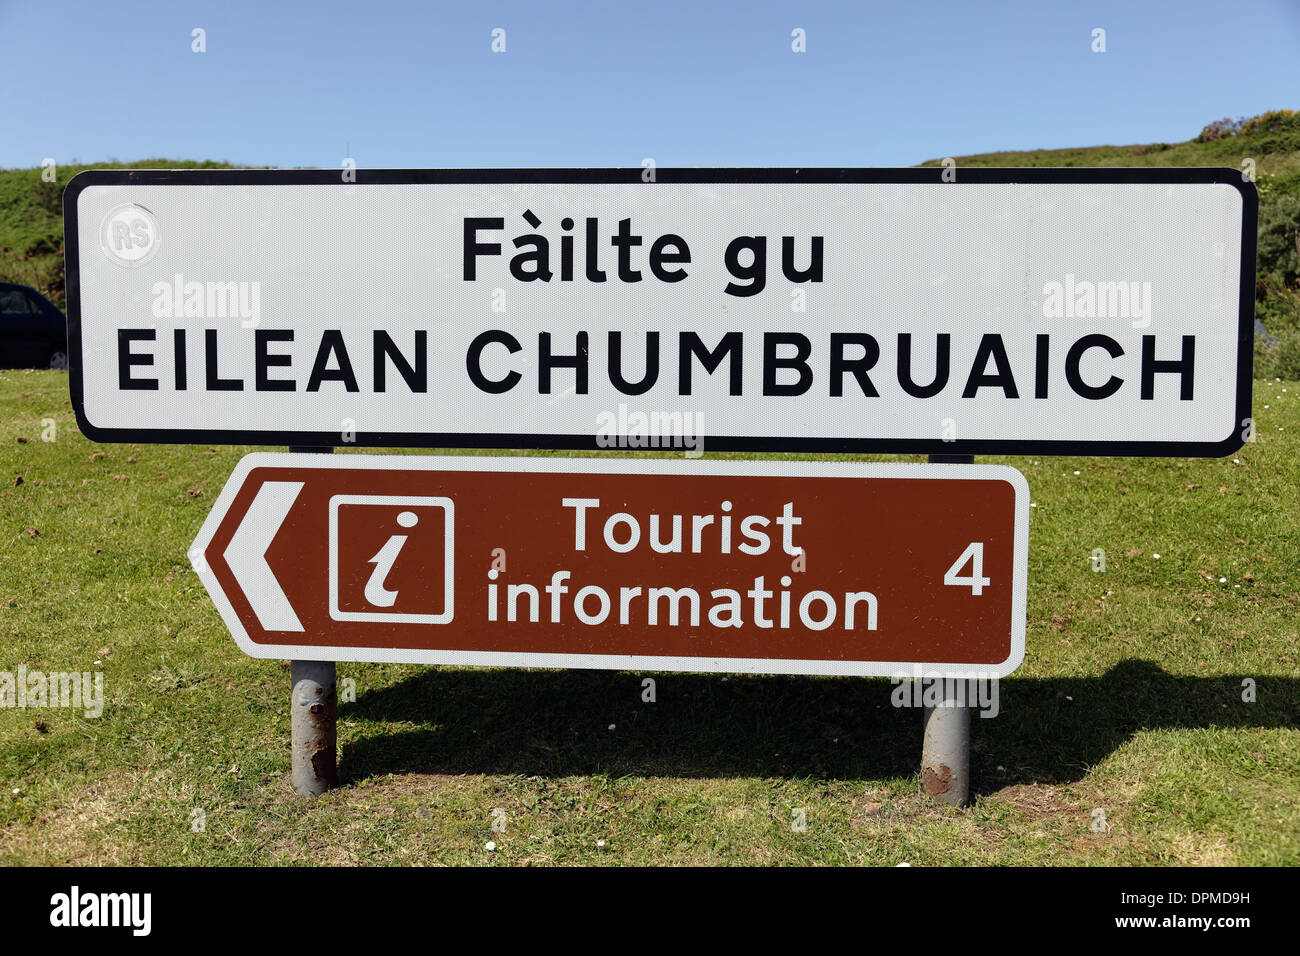 Gaelic Lingua segno Failte GU Eilean Chumbruaich, Benvenuti all'Isola di Cumbrae, e informazioni turistiche in inglese segno, Gran Cumbrae, Scozia, UK Foto Stock